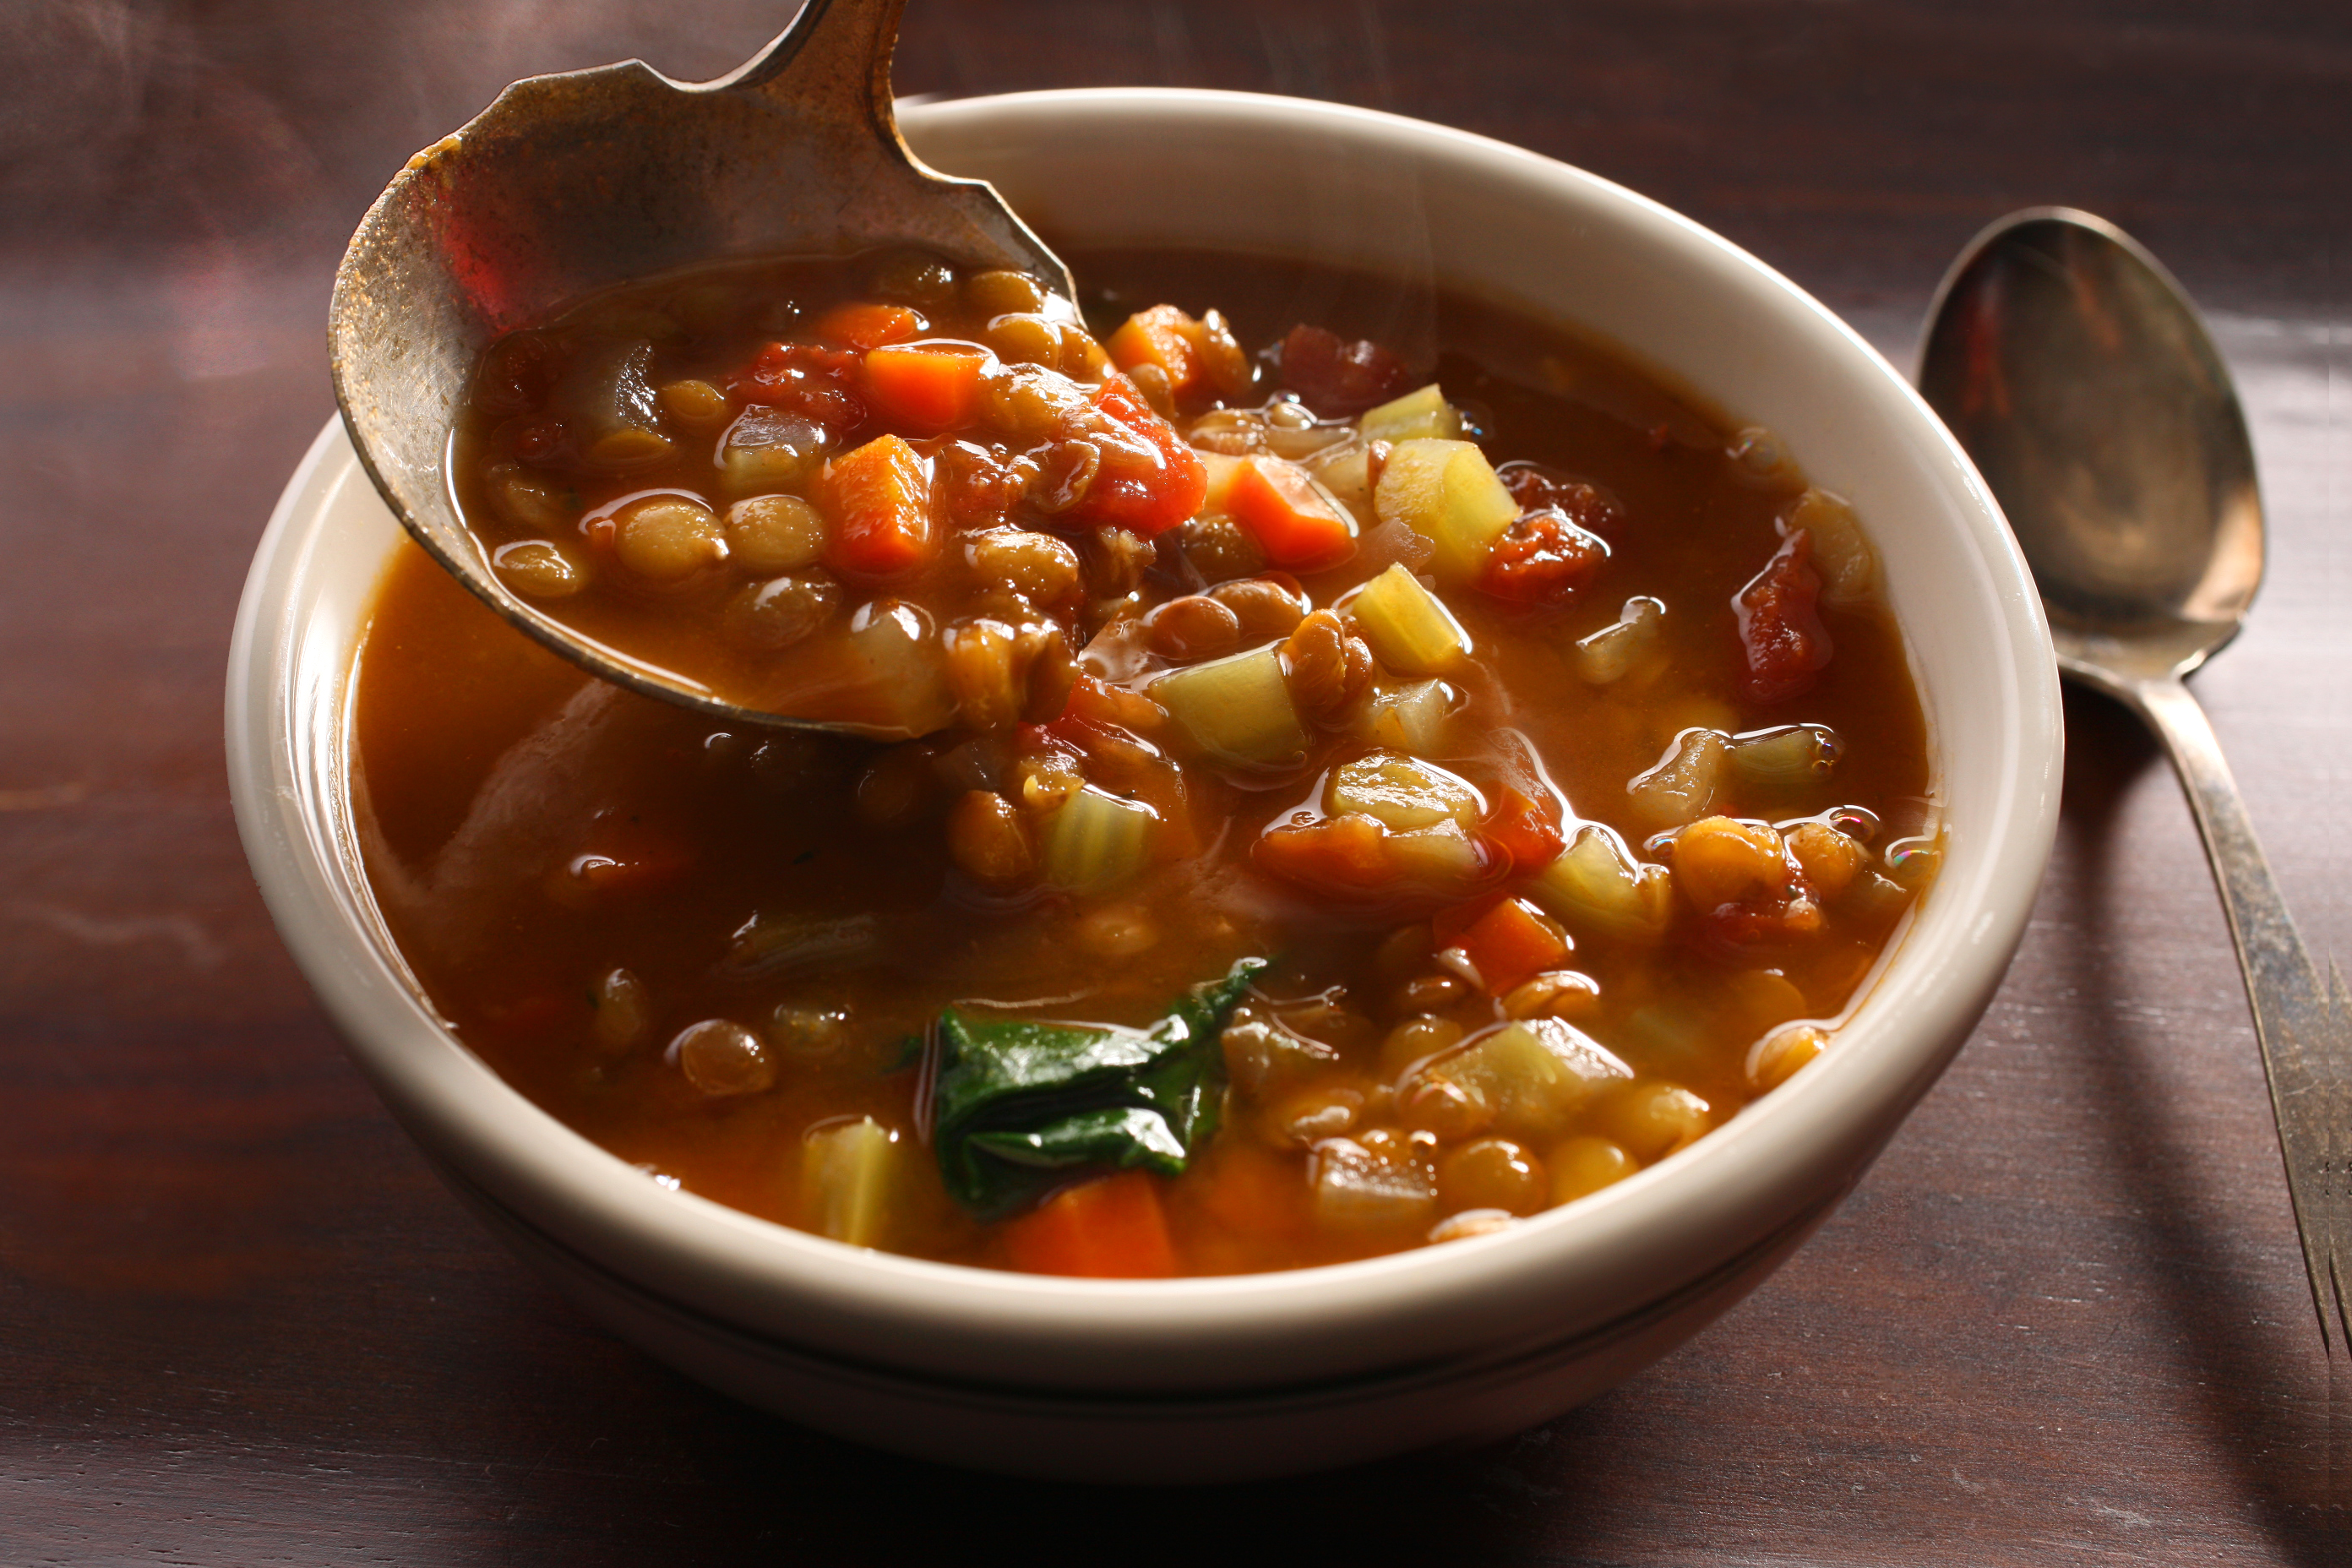 Суп из чечевицы красной с курицей и картошкой рецепт фото пошагово с фото классический